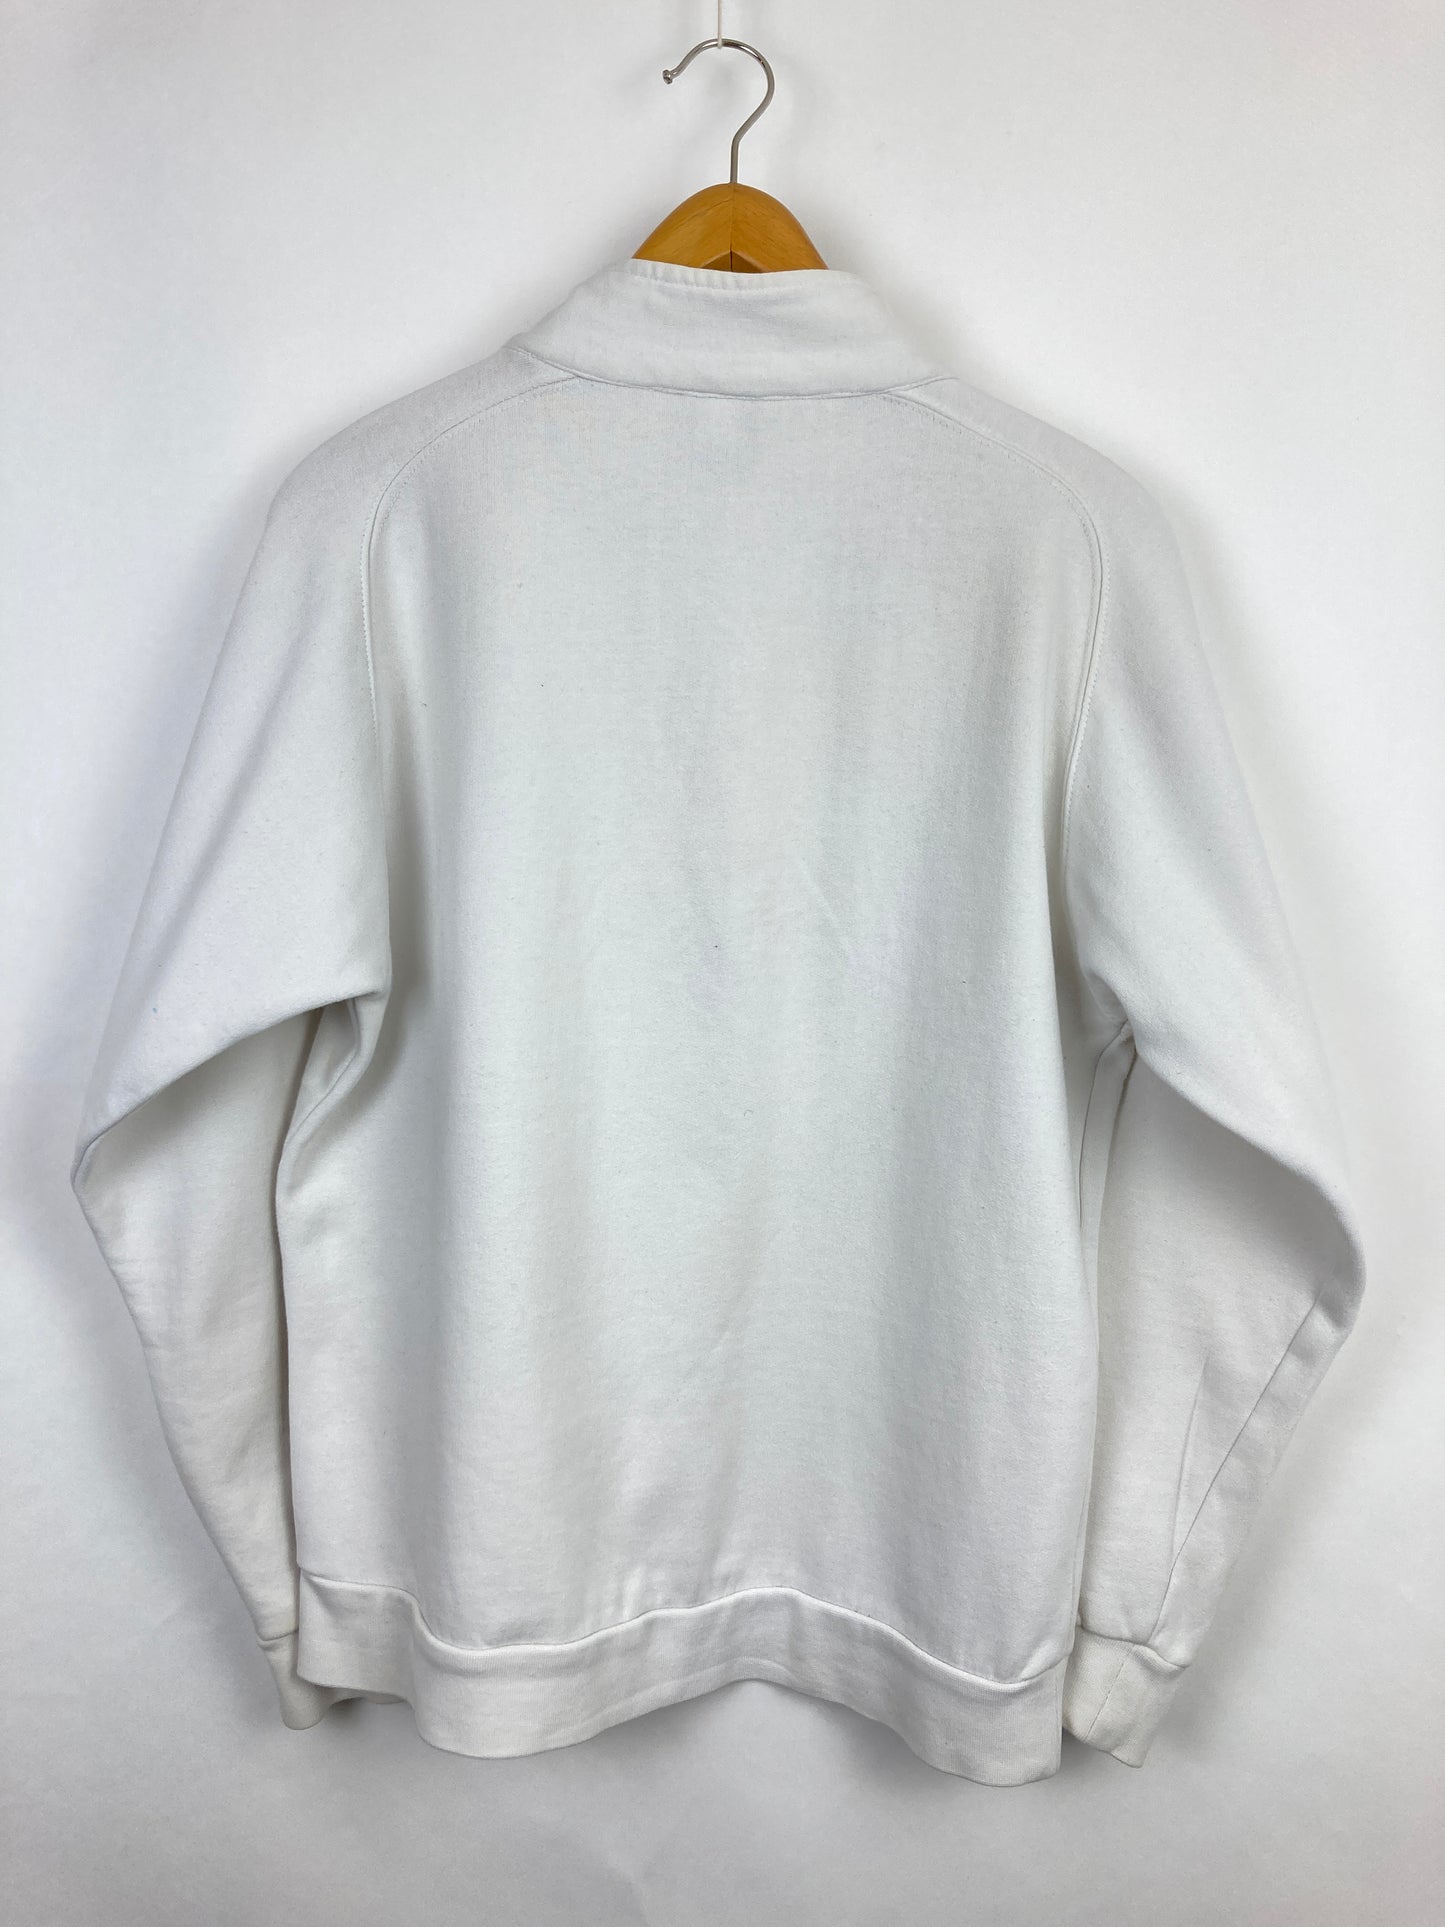 Umbro Halfzip Sweater (S)